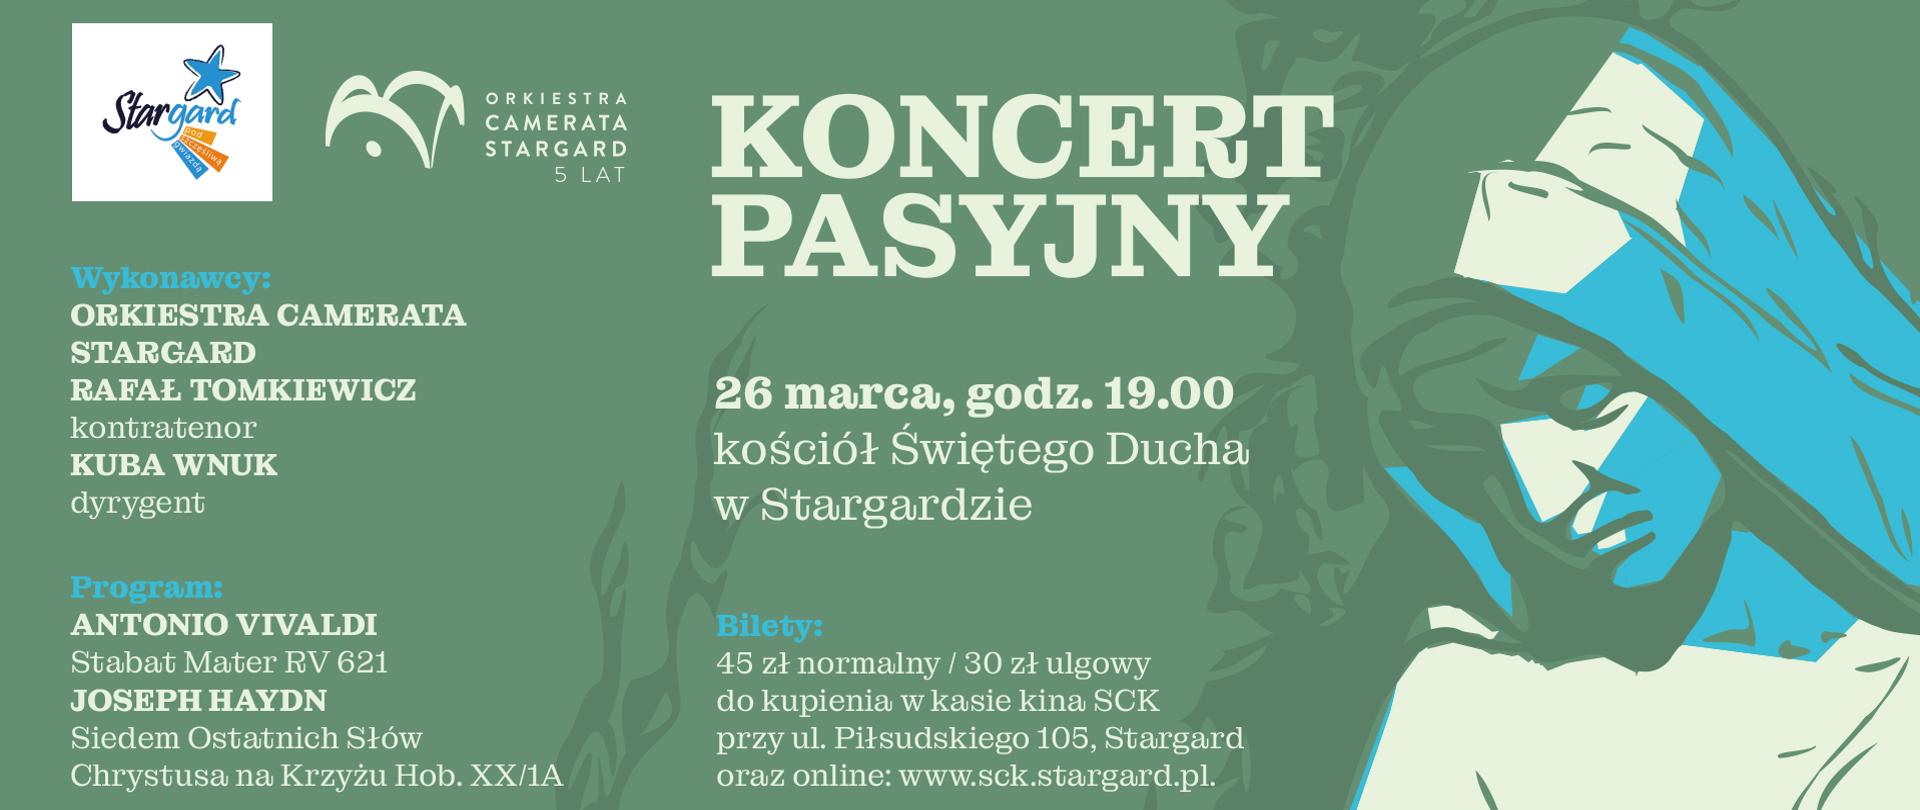 Informacja o koncercie orkiestry Camerata Stargard w dniu 26 marca 2023. 